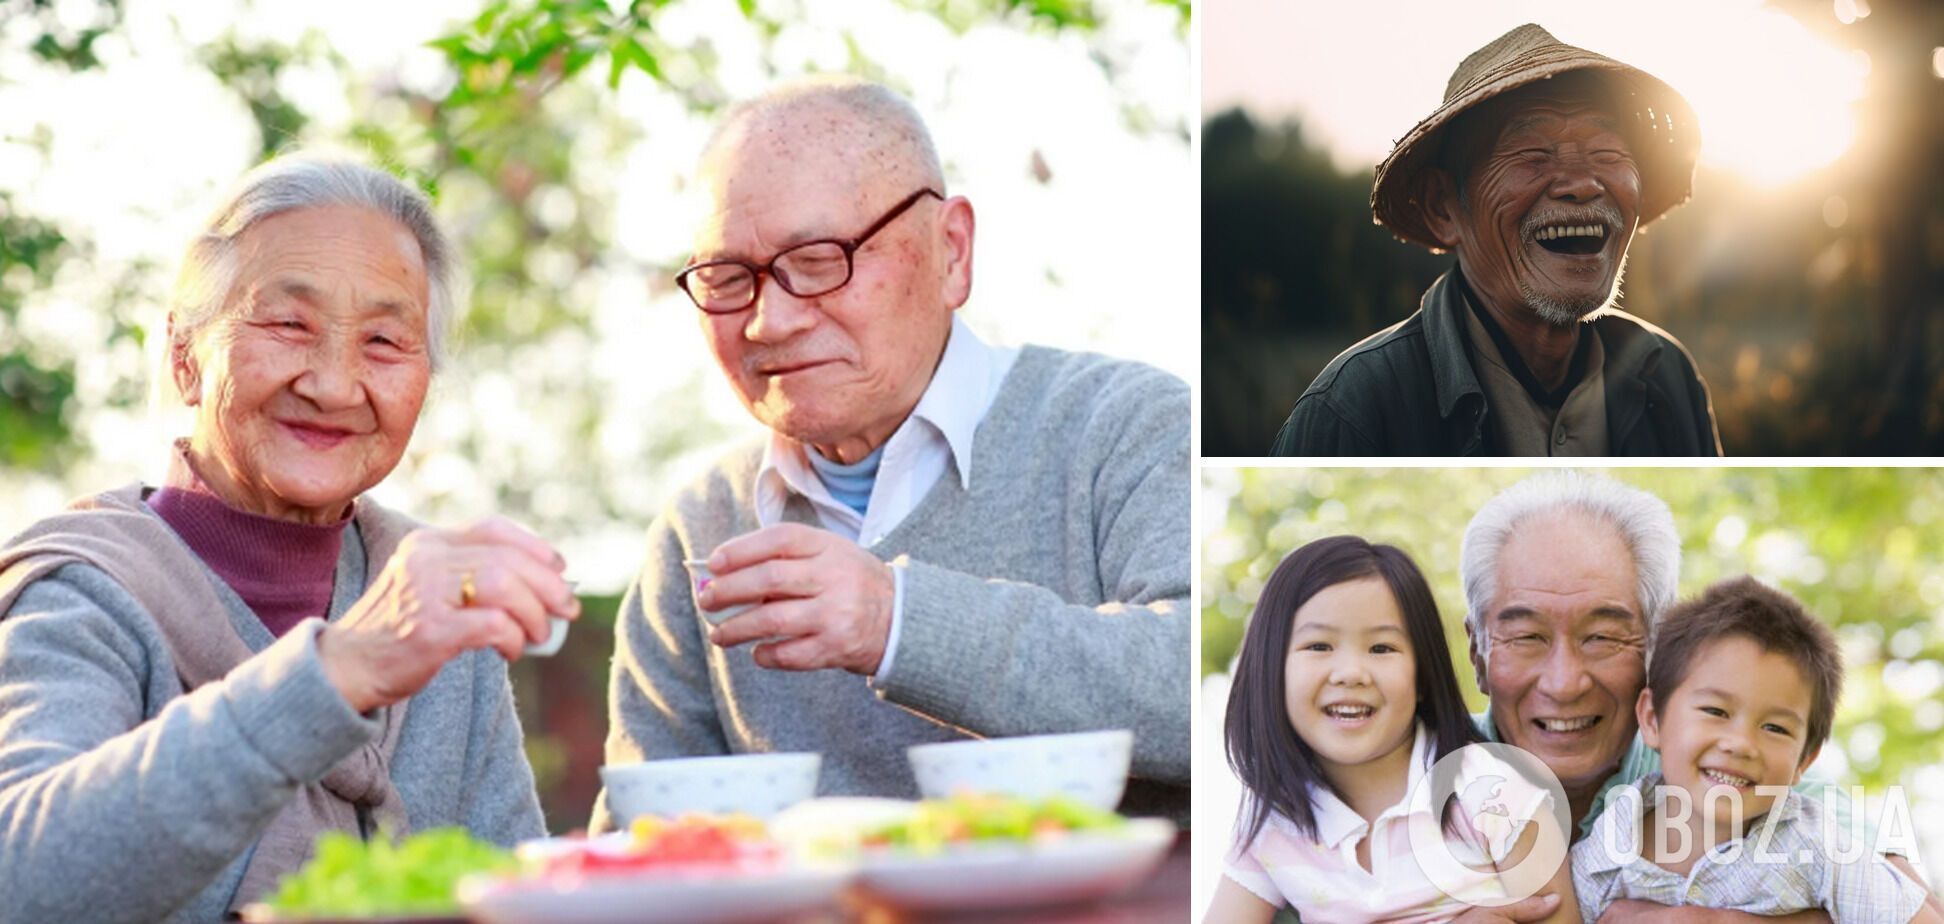 Почему в Японии много долгожителей и самые высокие зарплаты: история о чудесах, которые творит положительное мышление